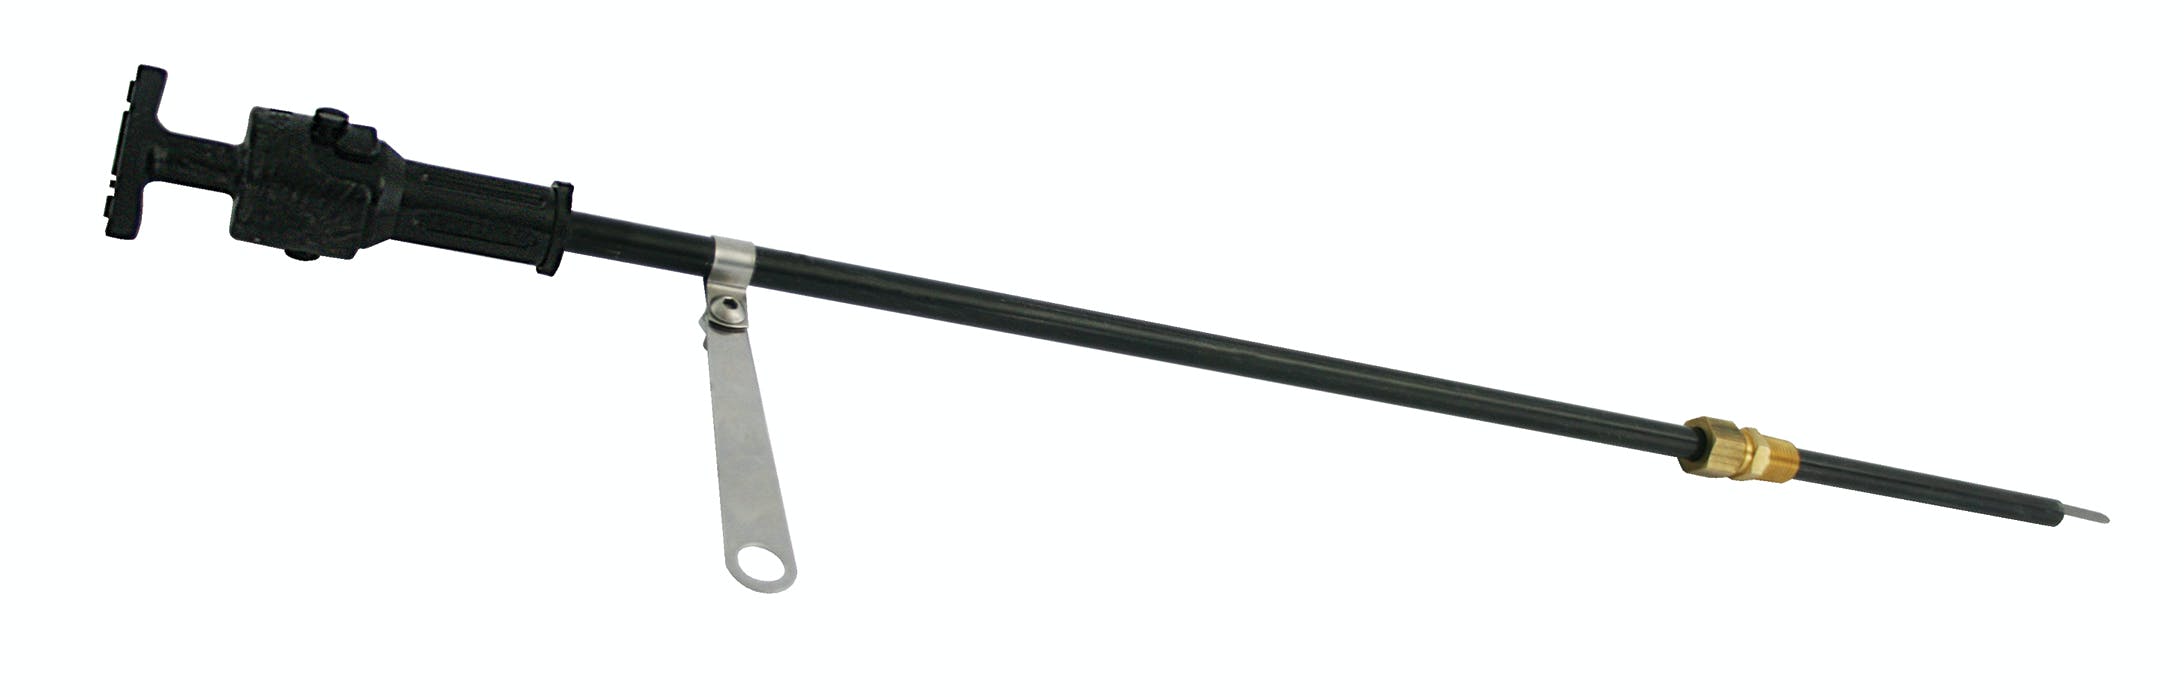 Moroso 25973 Zinc-Plated Twist-Lock Flexible Dipstick (1/4 NPT steel Weld-In Fitting)